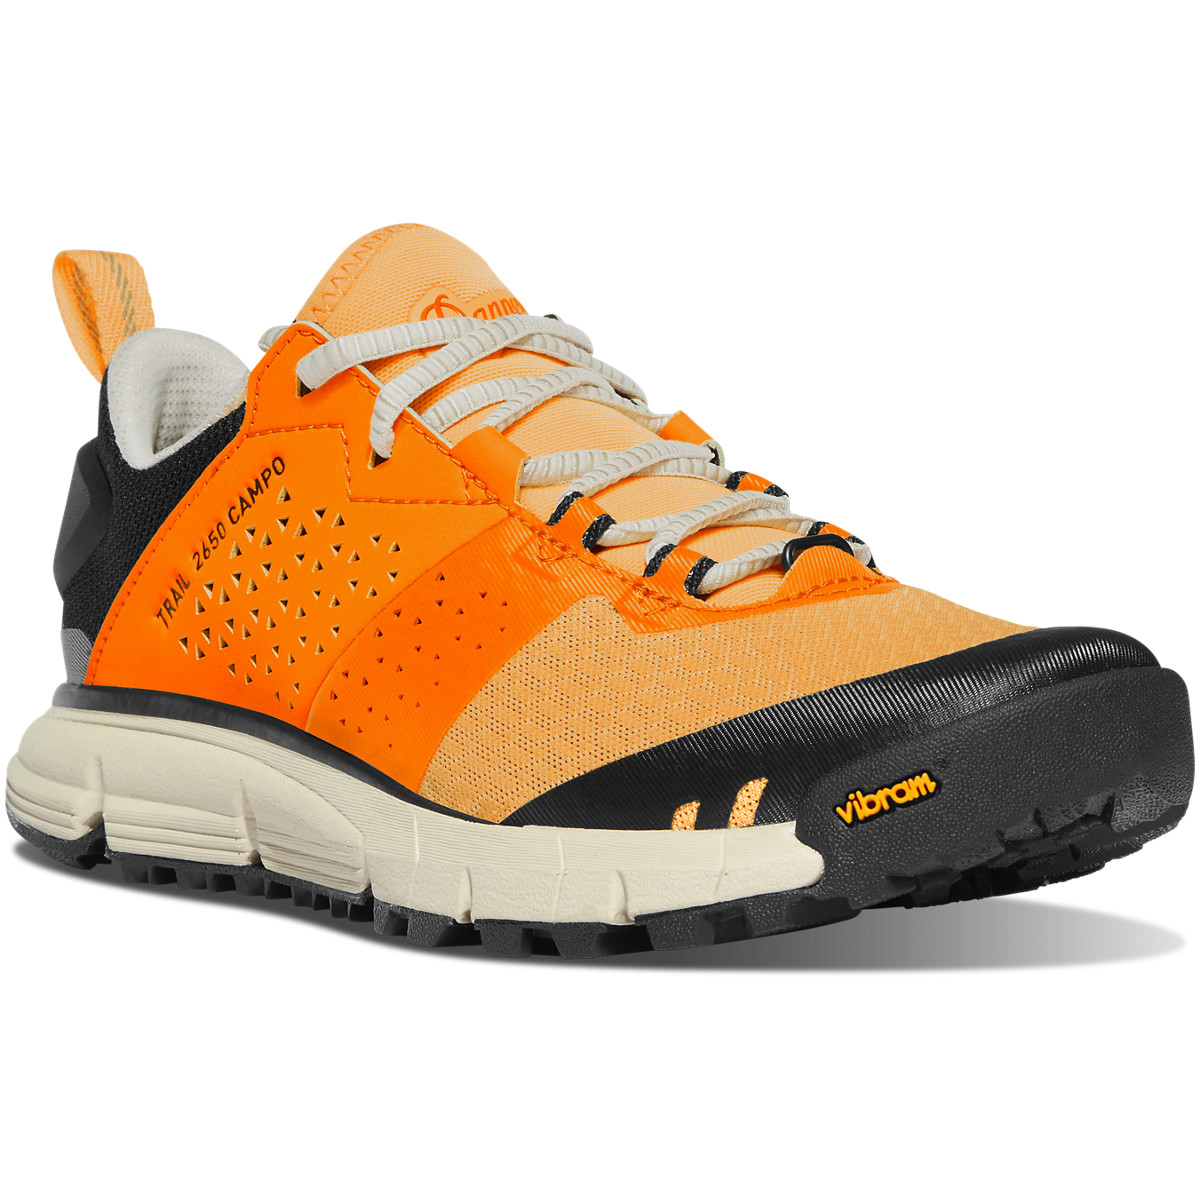 Danner Trail 2650 Campo - Chaussures Randonnée Orange/Noir - Femme ( France 41709DCNP )